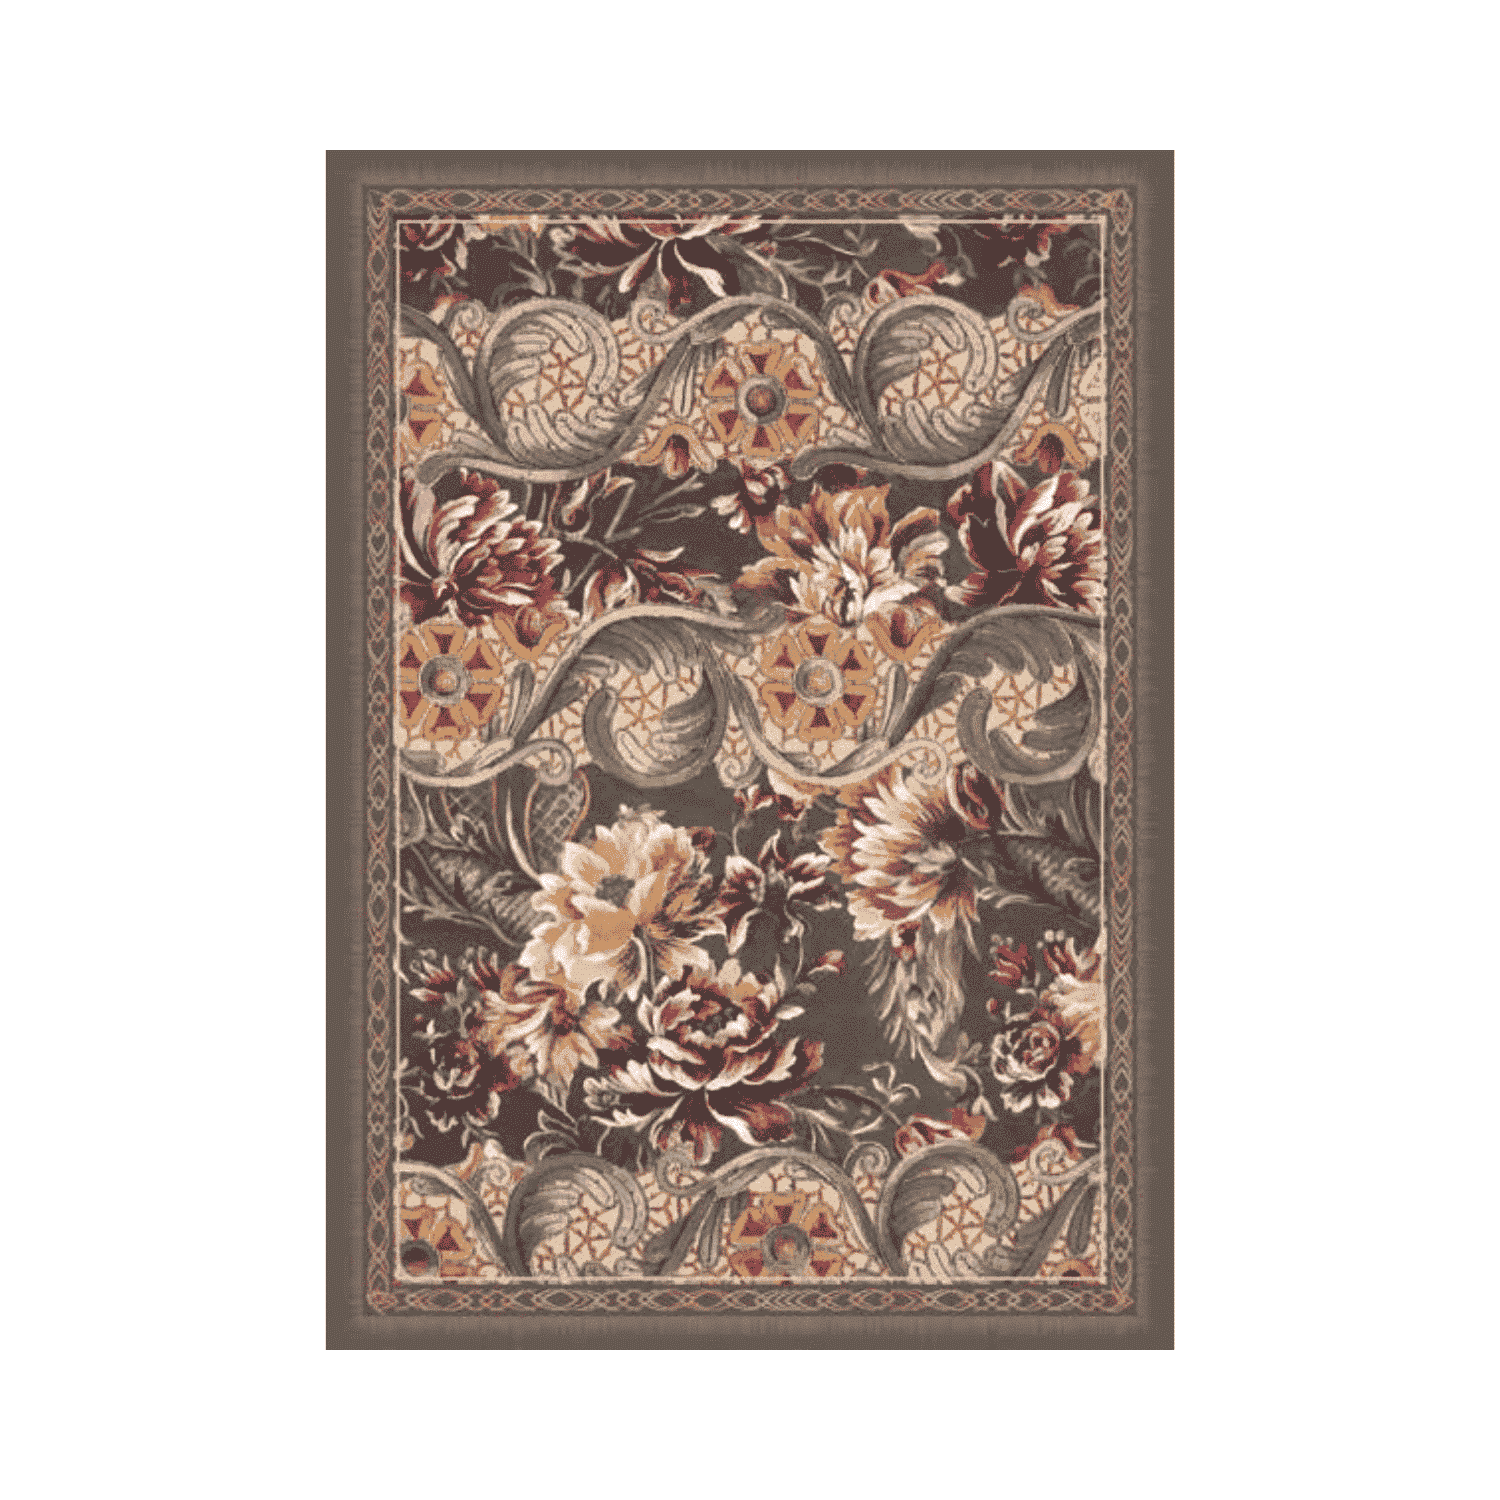 rousseau-tappeto-arredo-emozioni-artista-fiorato-fiori-giganti-oro-multicolor-rococo-settecento-front